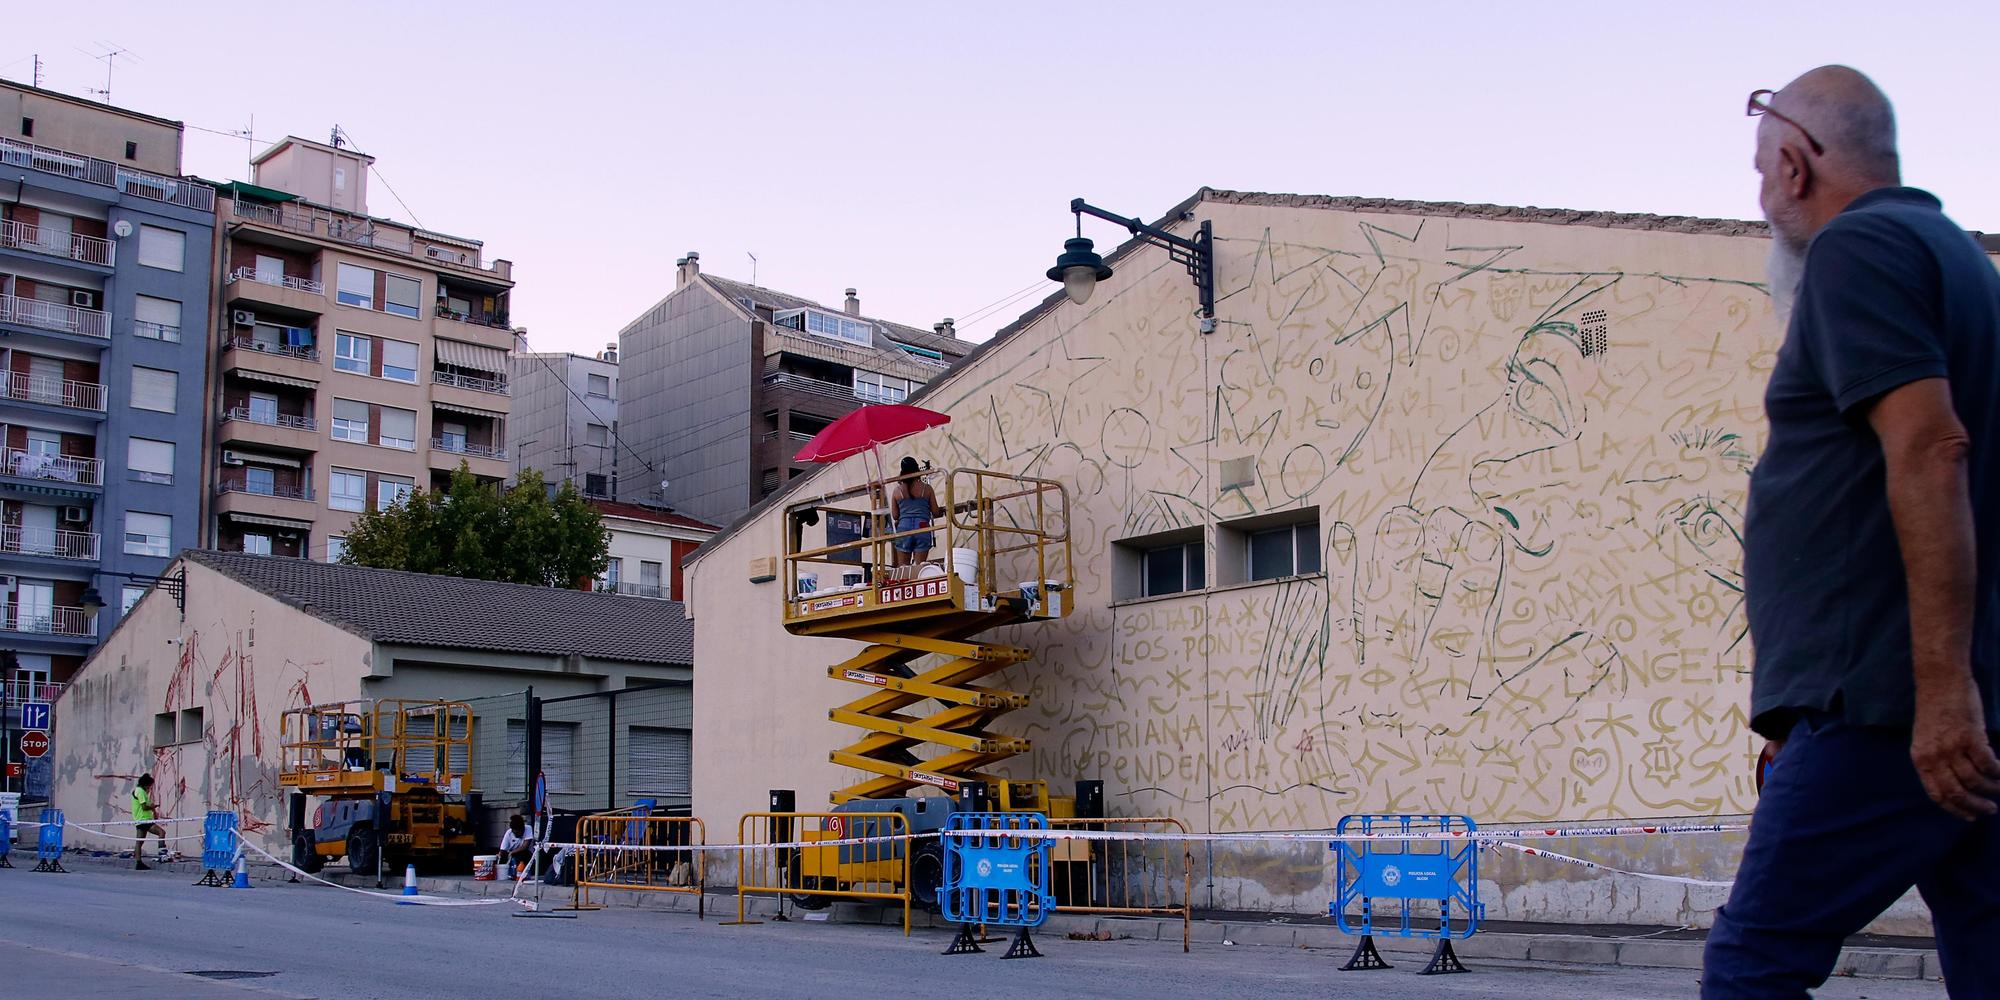 El arte urbano regresa a Alcoy